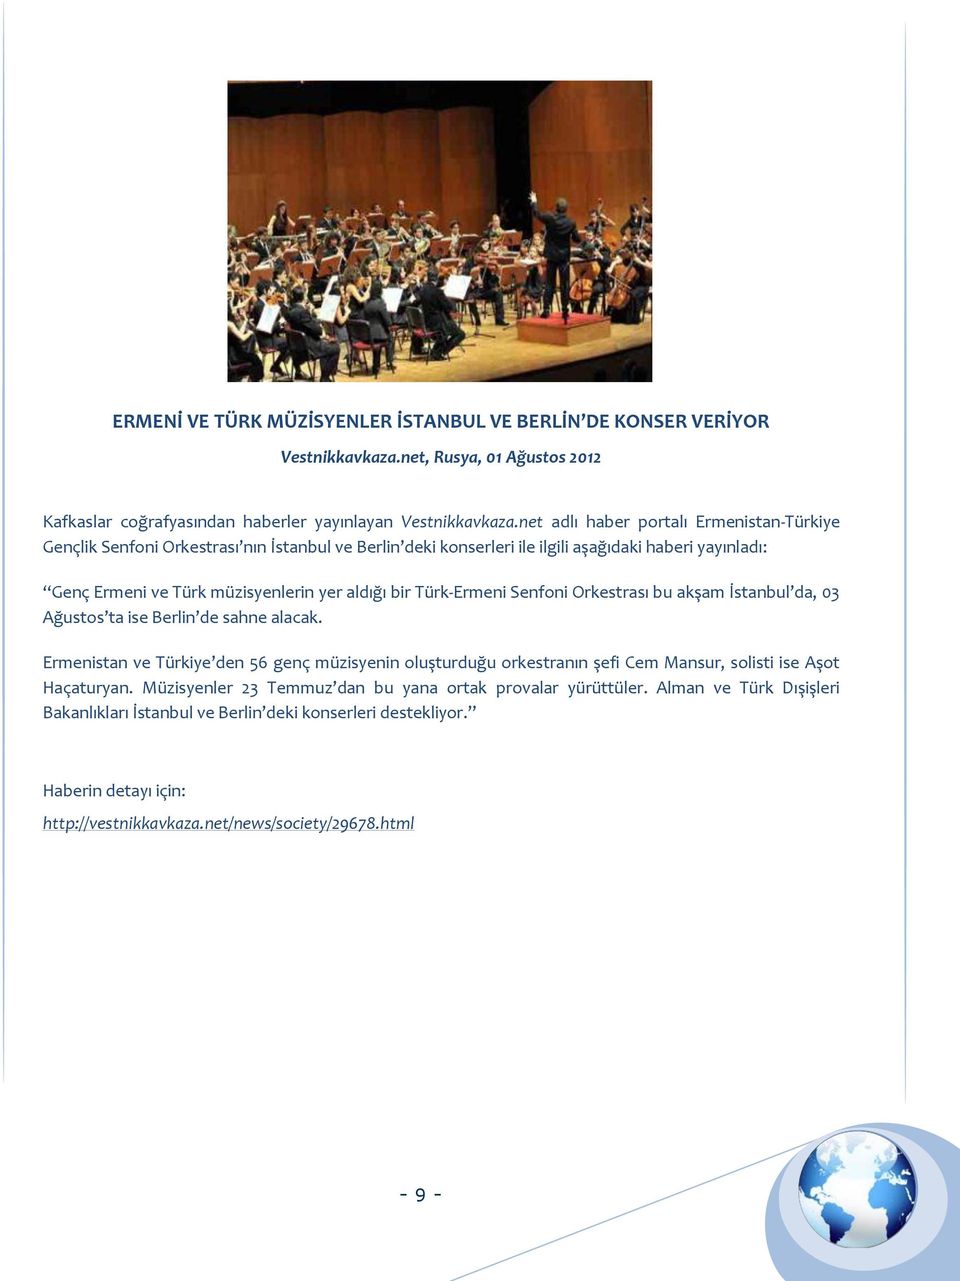 bir Türk-Ermeni Senfoni Orkestrası bu akşam İstanbul da, 03 Ağustos ta ise Berlin de sahne alacak.